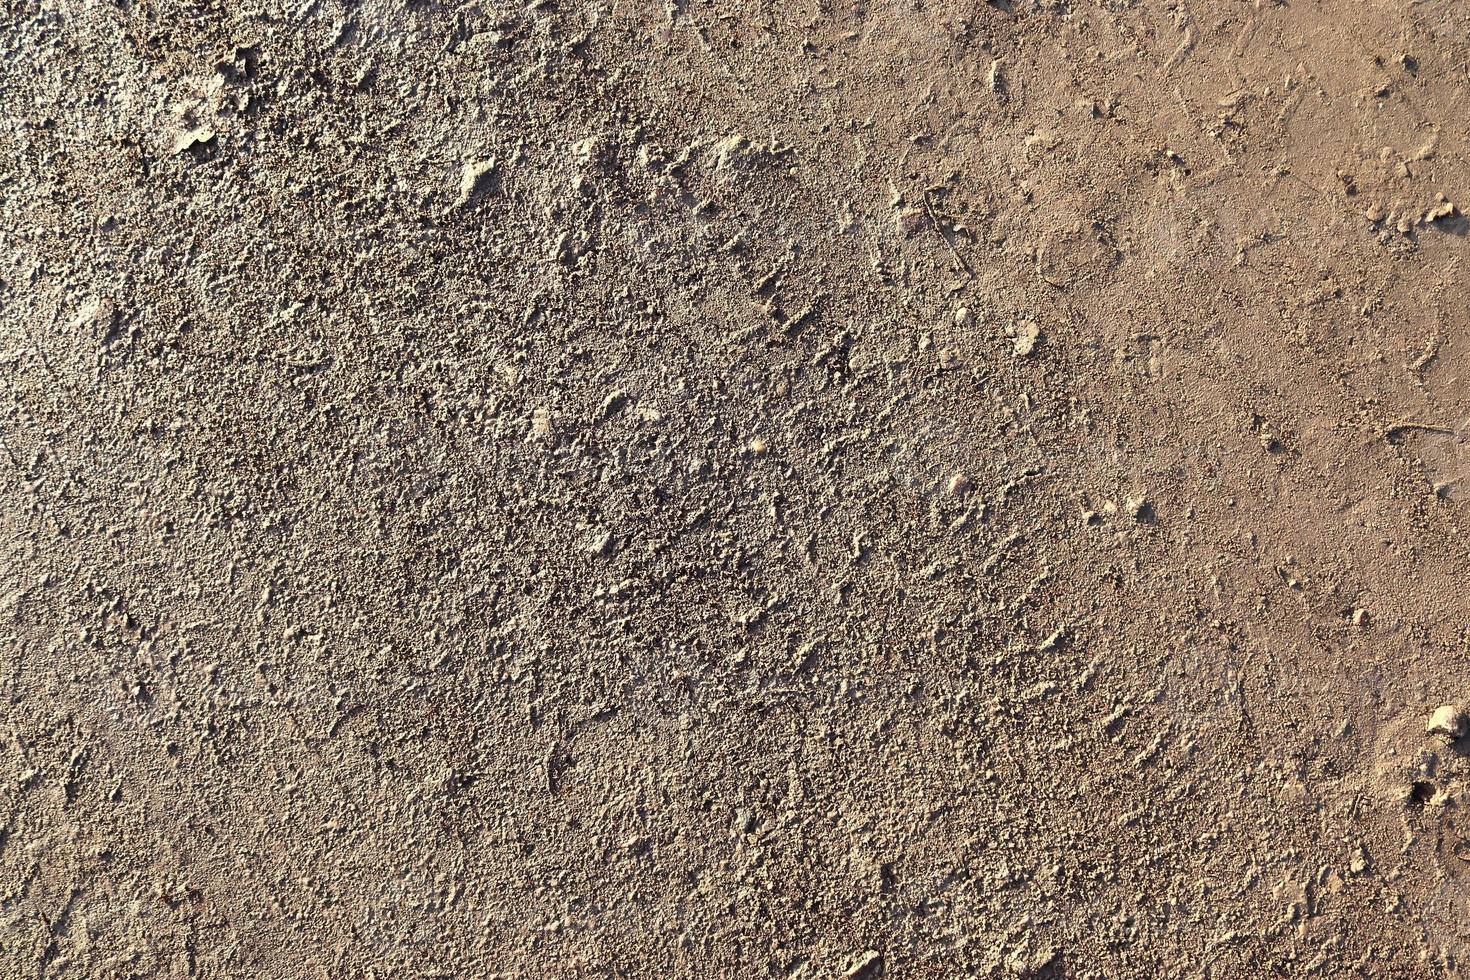 detaillierte nahaufnahme auf einer braunen sandgrundstruktur foto